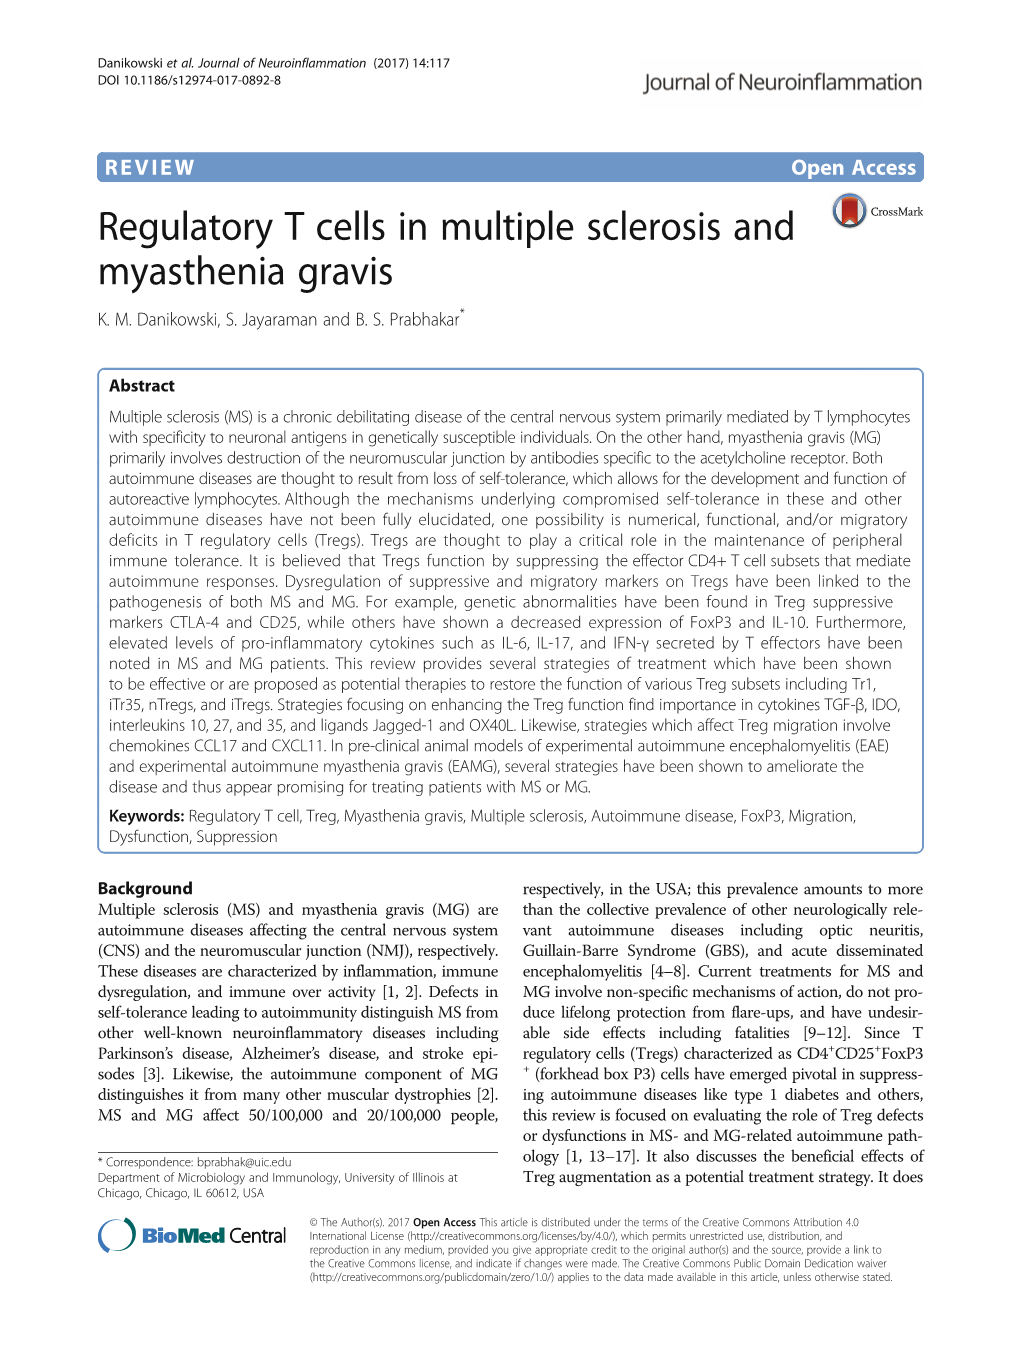 Regulatory T Cells in Multiple Sclerosis and Myasthenia Gravis K